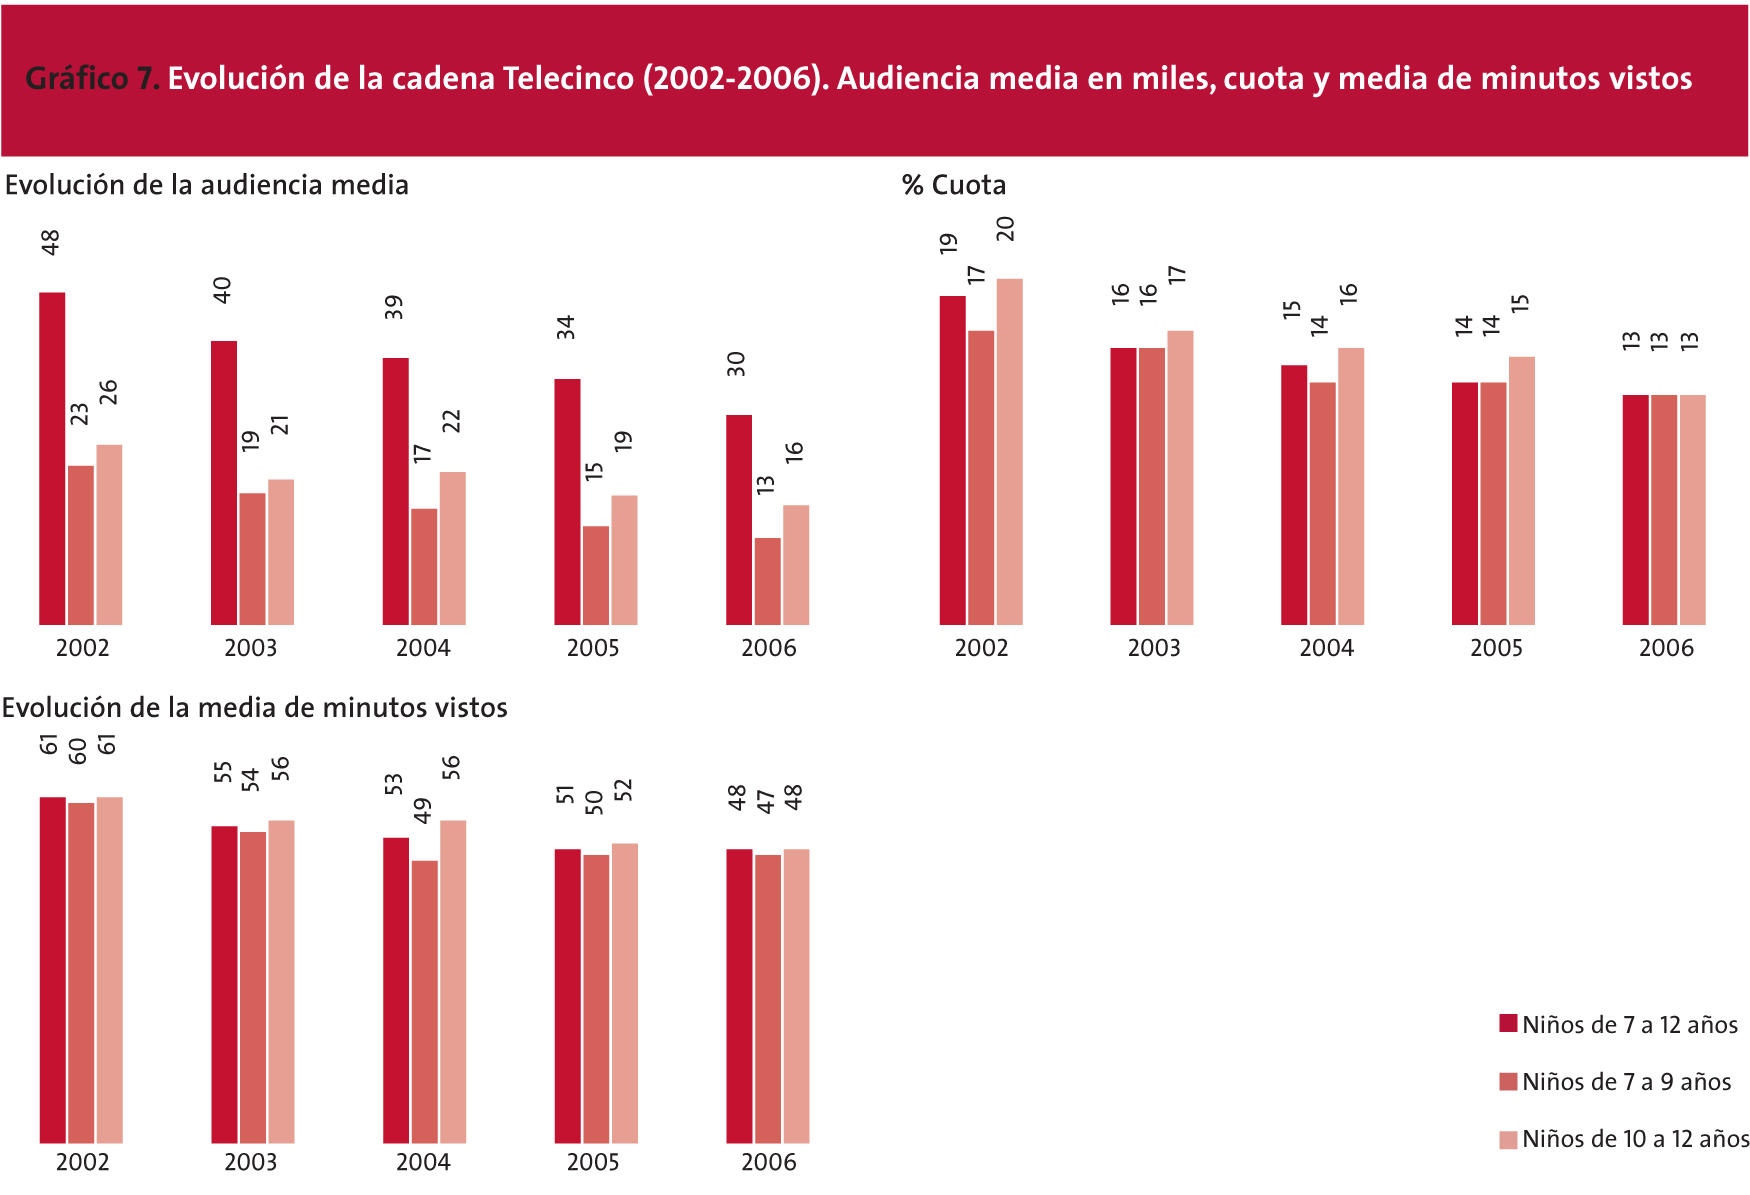 EVOLUCIÓN DE LA CADENA TELECINCO (2002-2006). AUDIENCIA MEDIA EN MILES, CUOTA Y MEDIA DE MINUTOS VISTOS